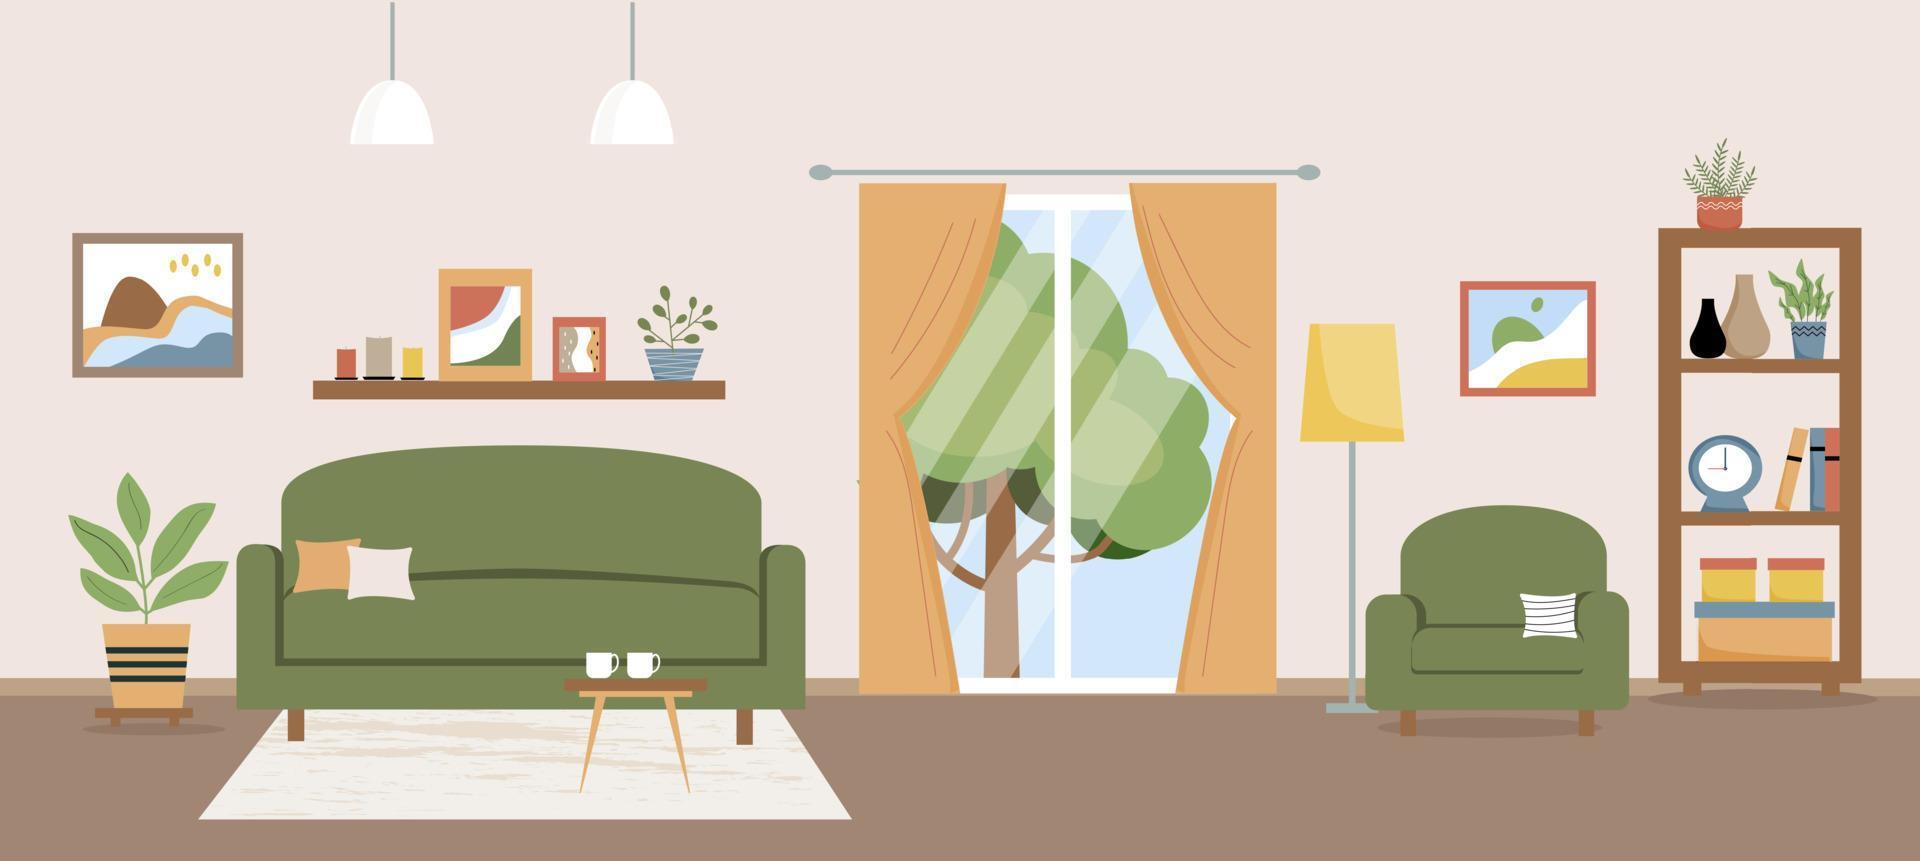 vardagsrum vektor illustration. vardagsrum med möbler. soffa, fåtölj, bord, balkong, ställning, hemväxter, bord, dekoration. platt stil.